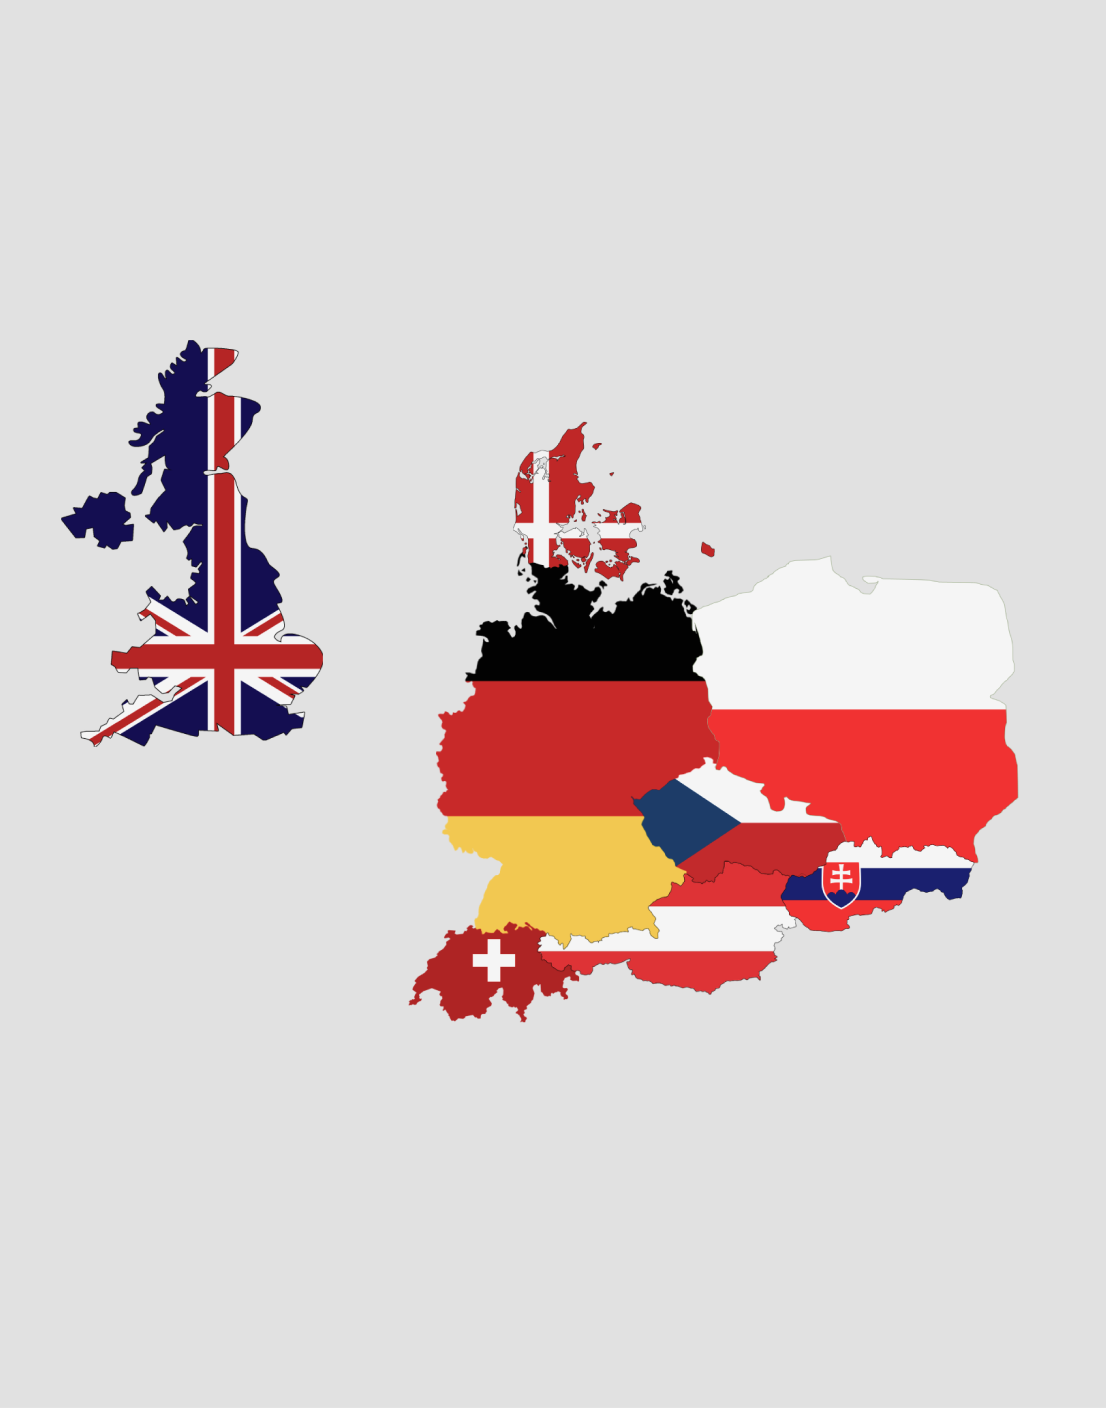 Mapa z oznaczonymi krajami: Polska, Wielka Brytania, Słowacja, Szwajcaria, Niemcy, Austria, Dania, Czechy, 